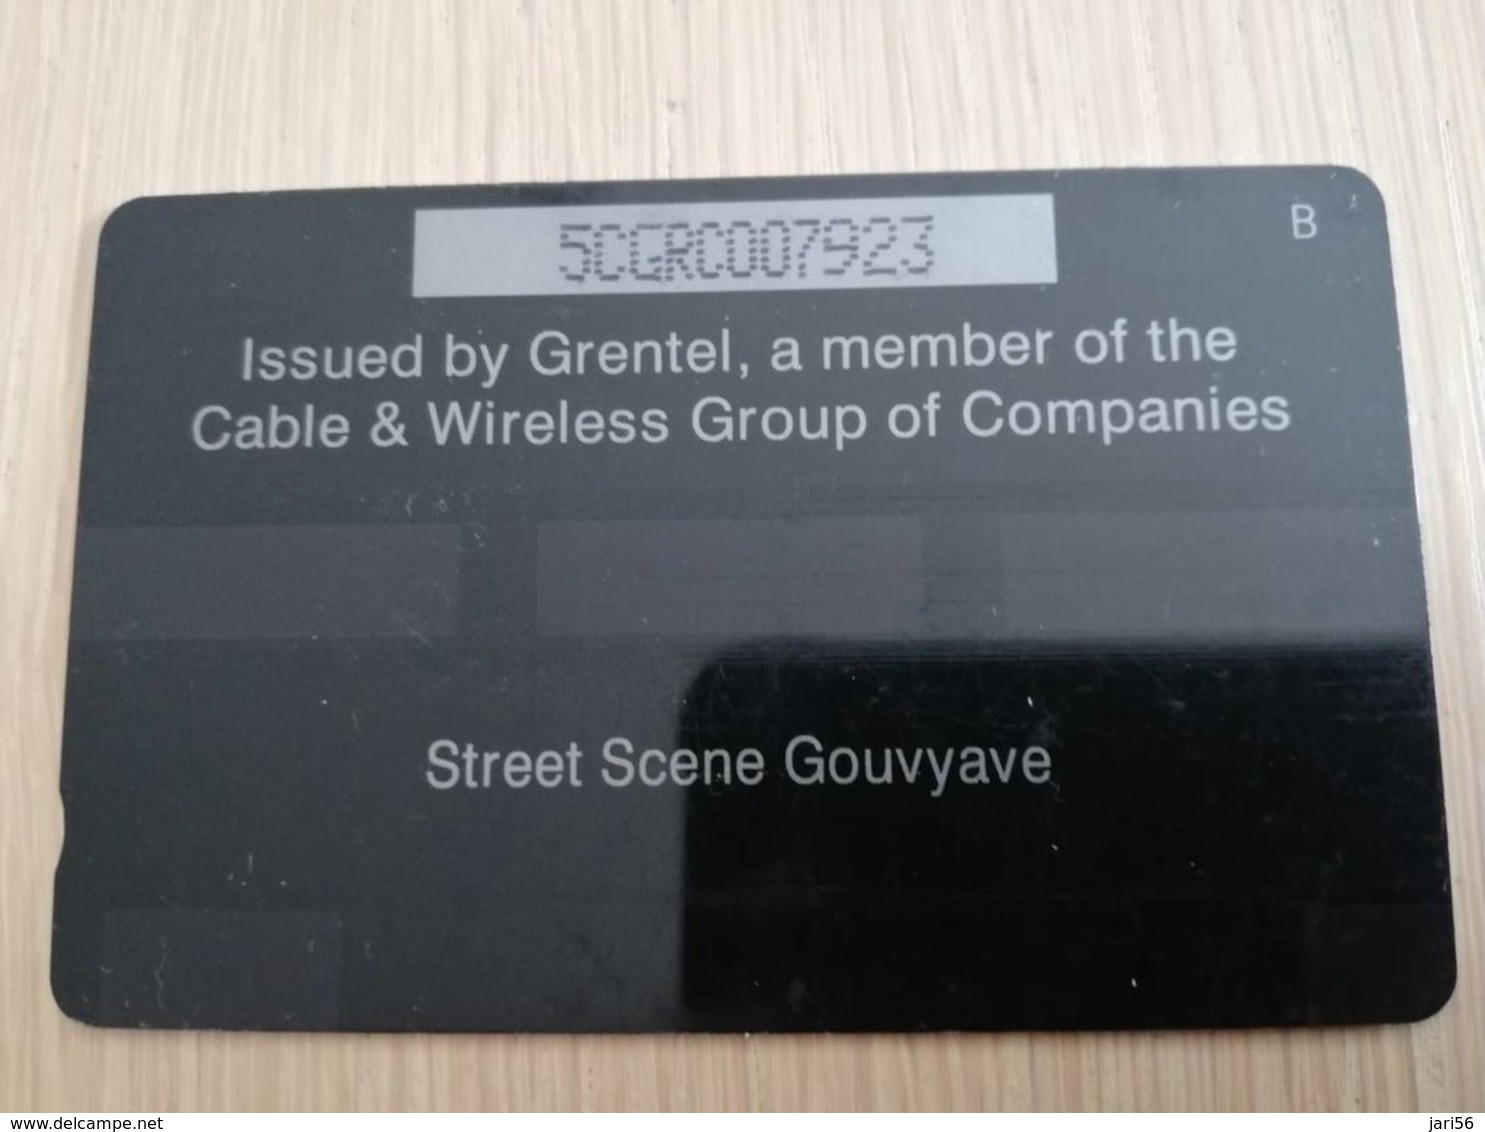 GRENADA  $ 40,- GPT GRE-5C  STREET SCENE GOUVYAVE   MAGNETIC    Fine Used Card    **2235 ** - Grenada (Granada)